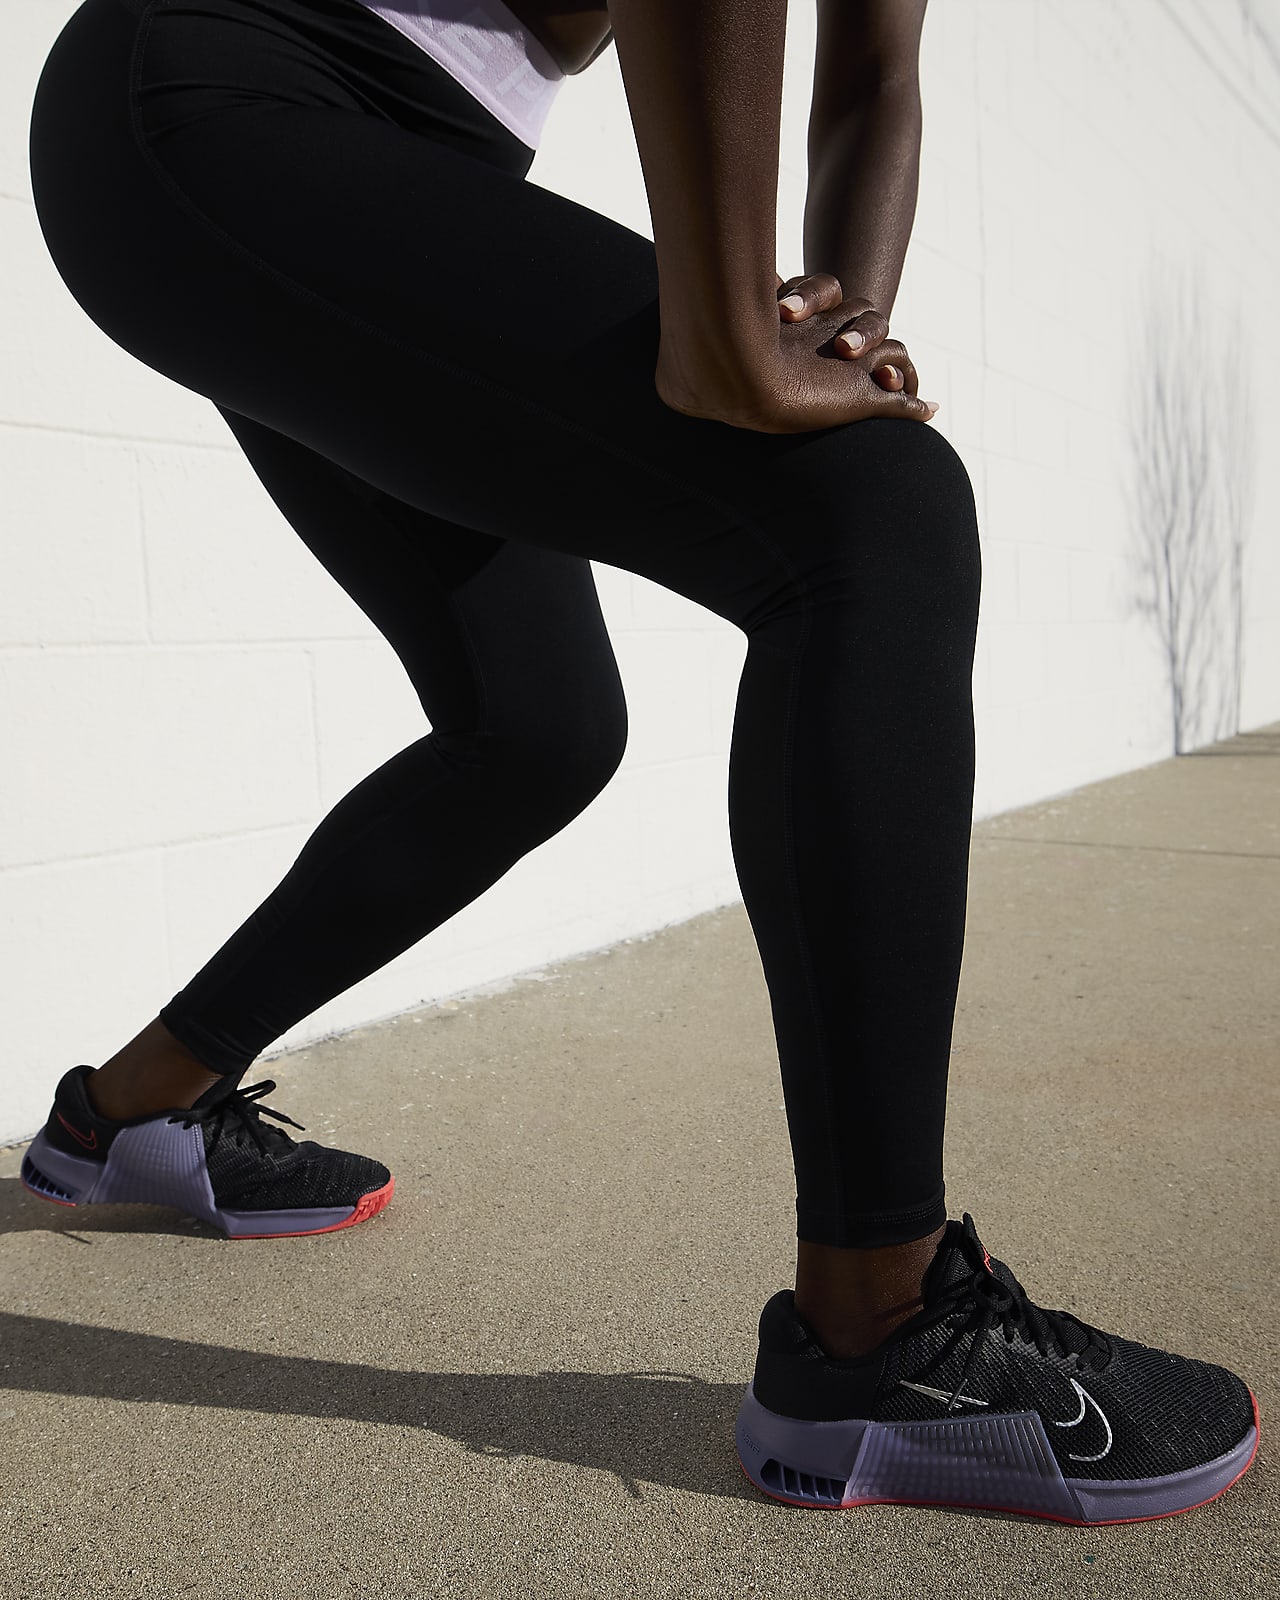 Nike Women's Metcon 9 Training Shoes